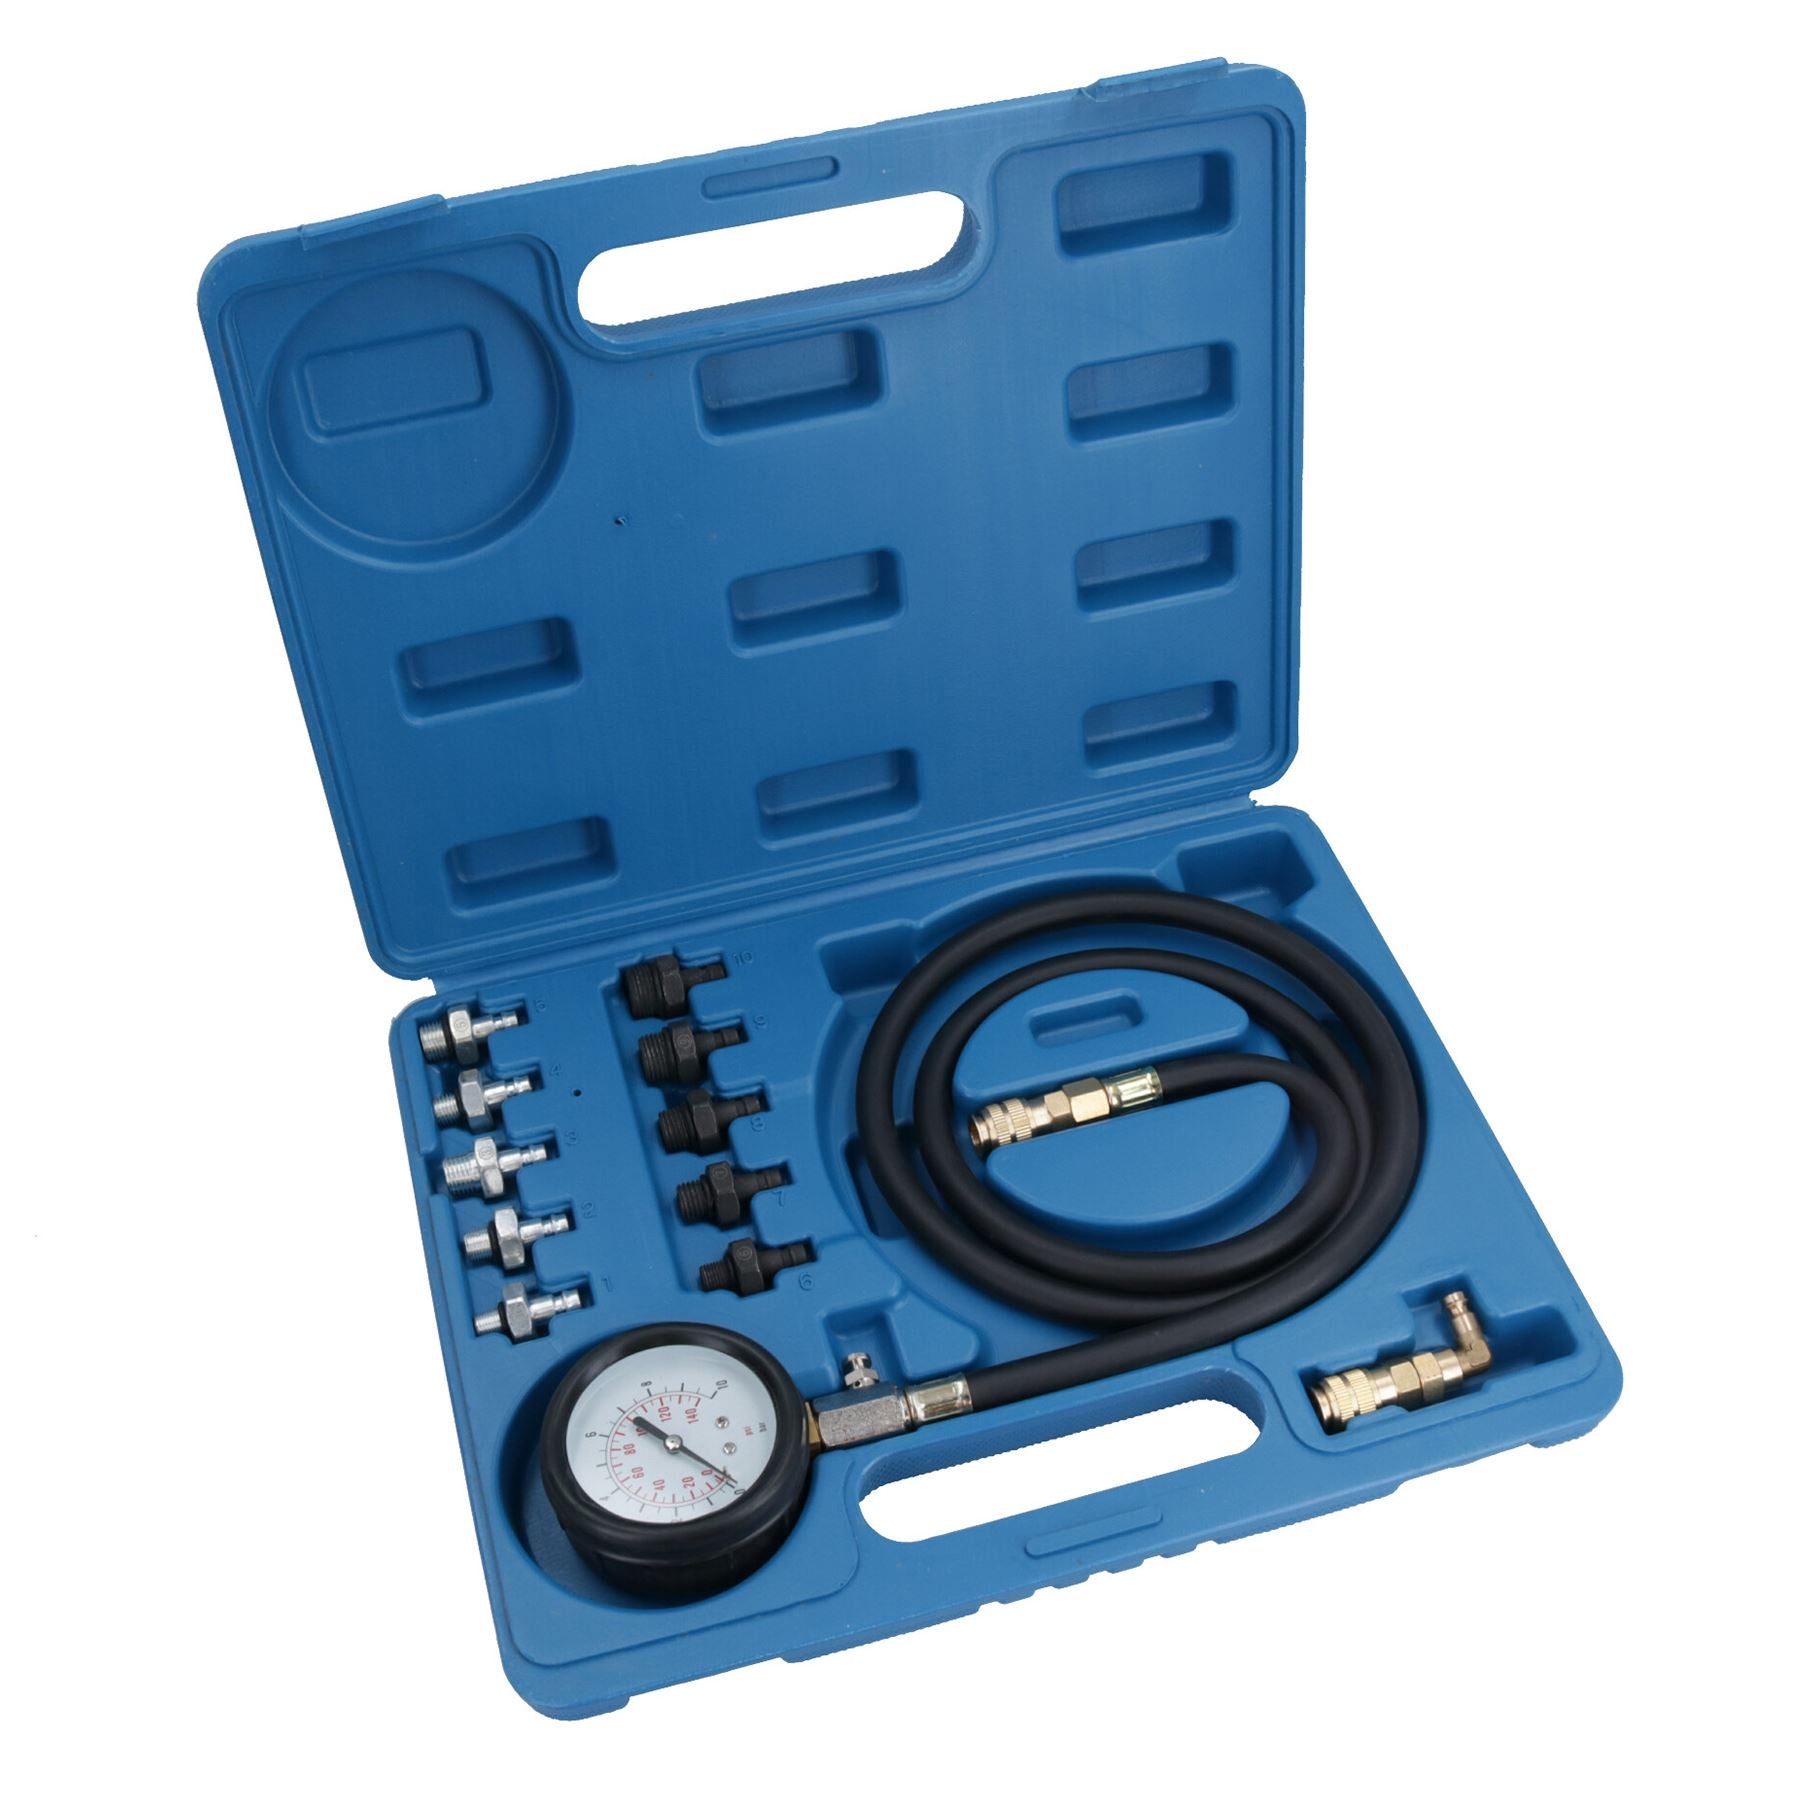 Engine Oil Pressure Tester Kit Diagnostic Warning Device For cars Vans 12pc Set